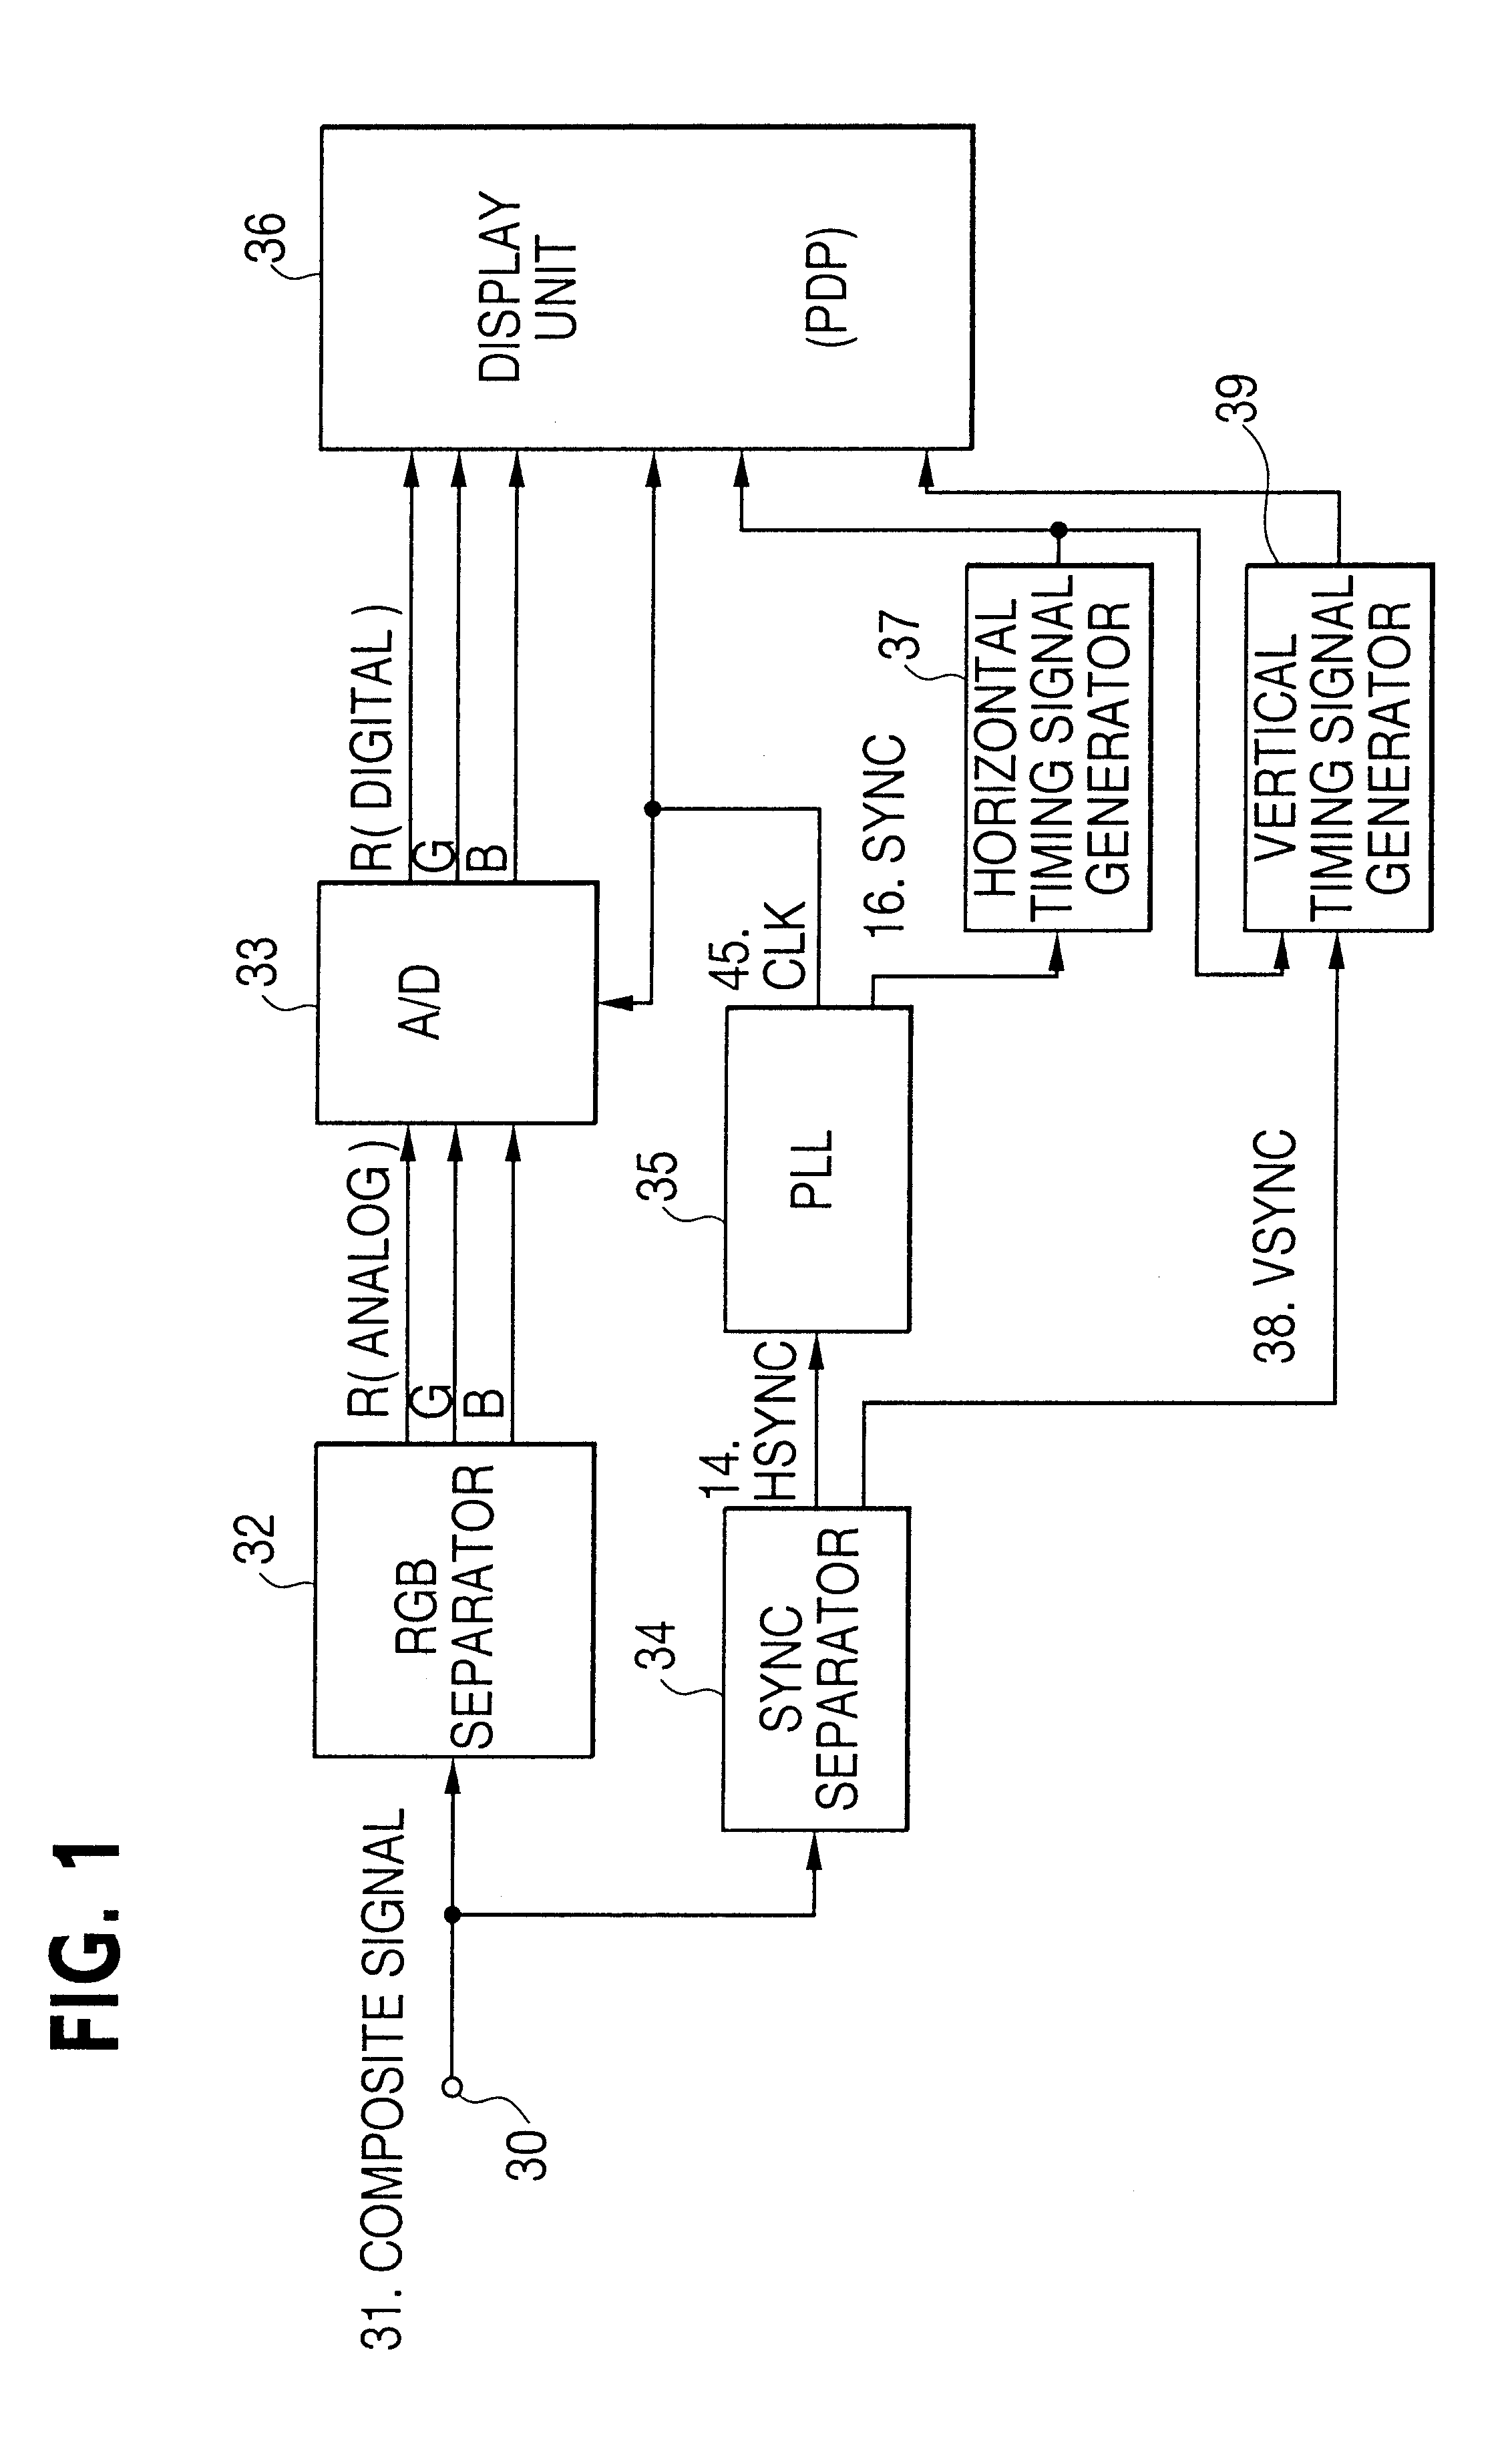 PLL circuit for digital display apparatus